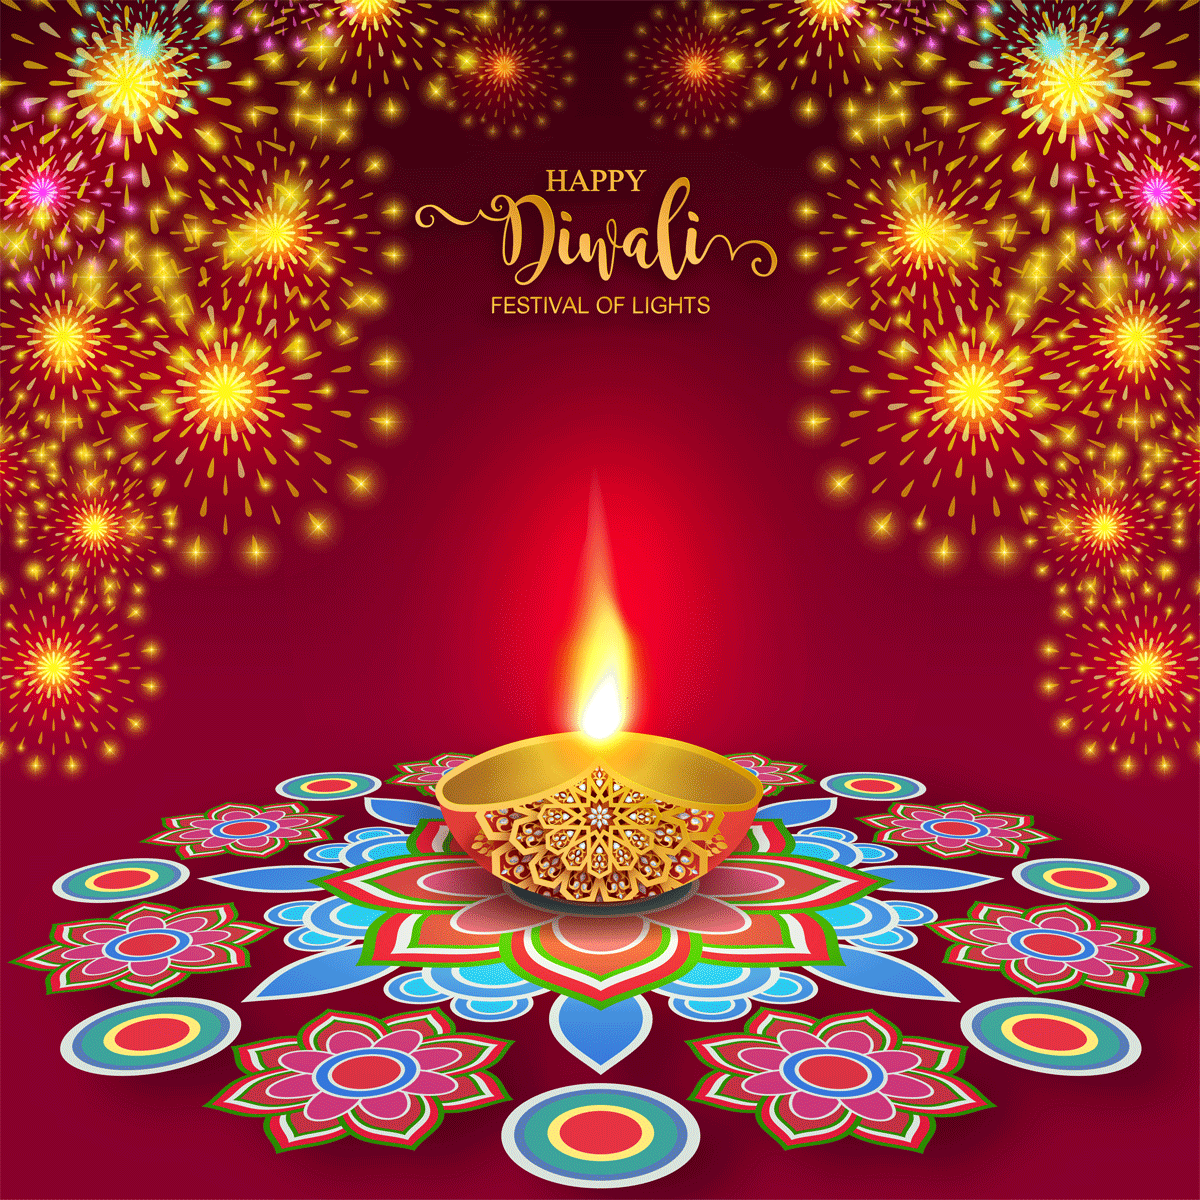 排灯节豪华矢量贺卡 Diwali Luxury Vector Greeting Card插图